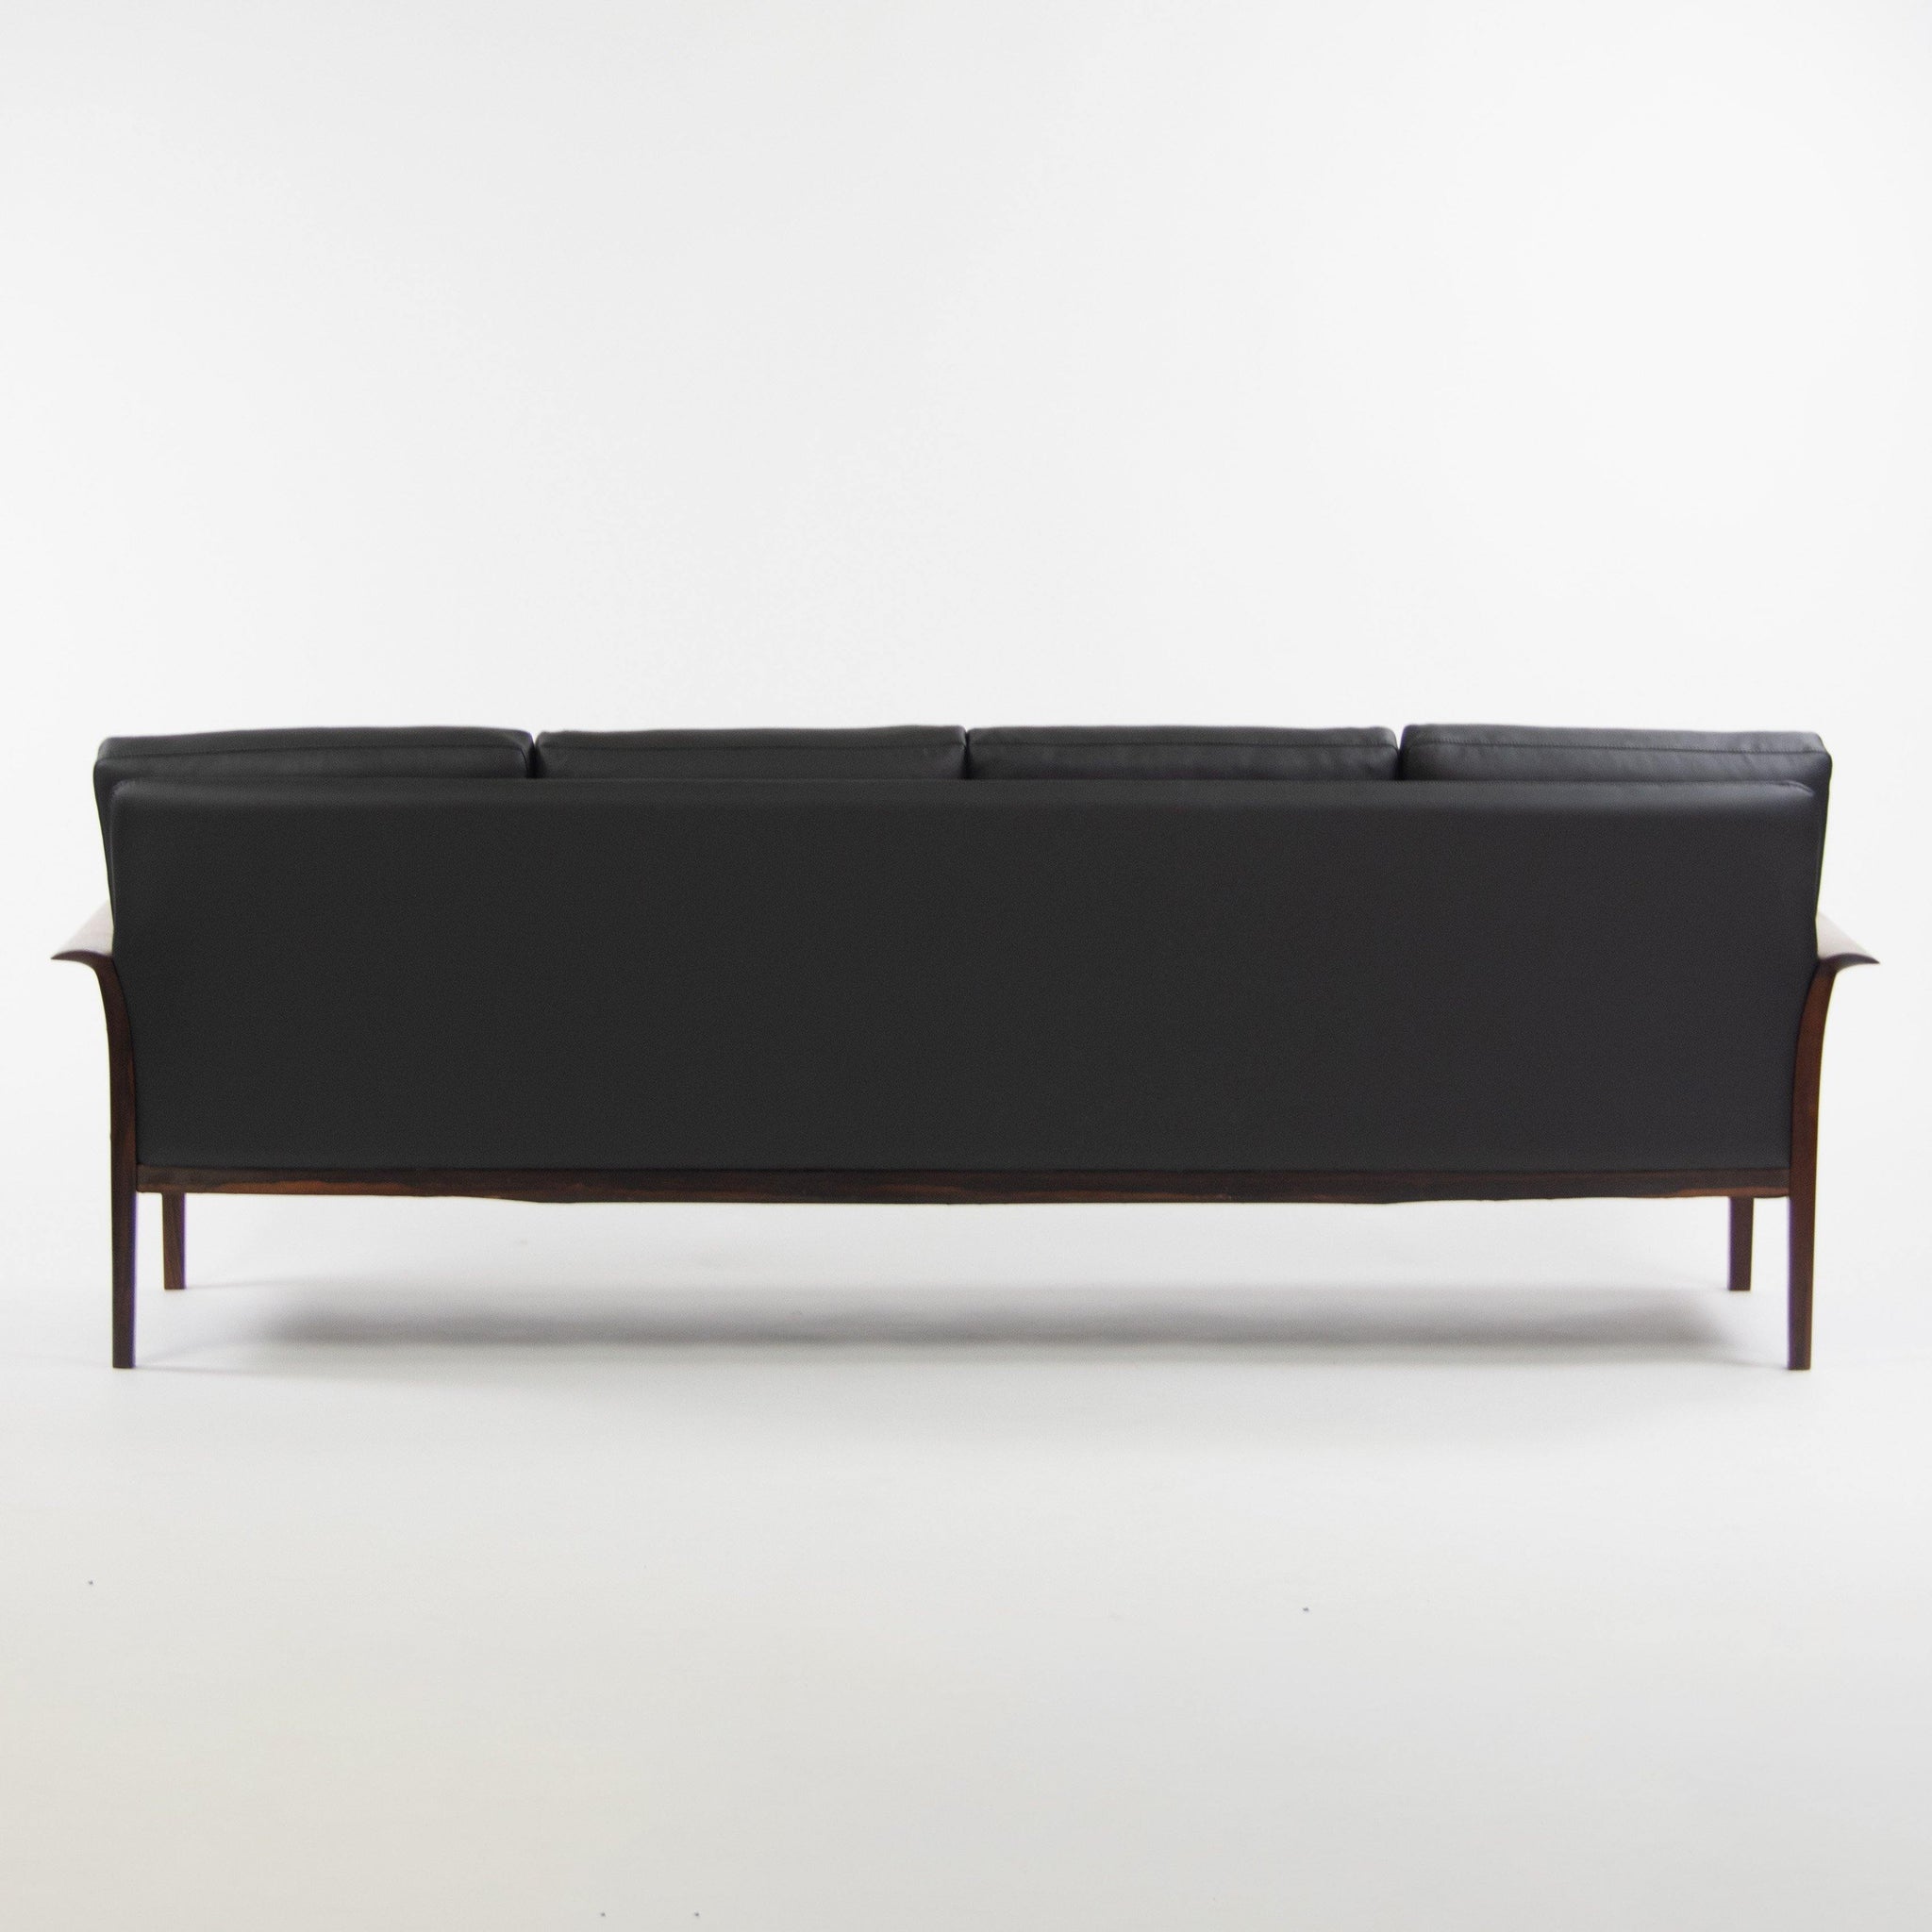 1960's Hans Olsen Rosewood Sofa for Vatne Mobler Norway New Black Upholstery - Rarify Inc.